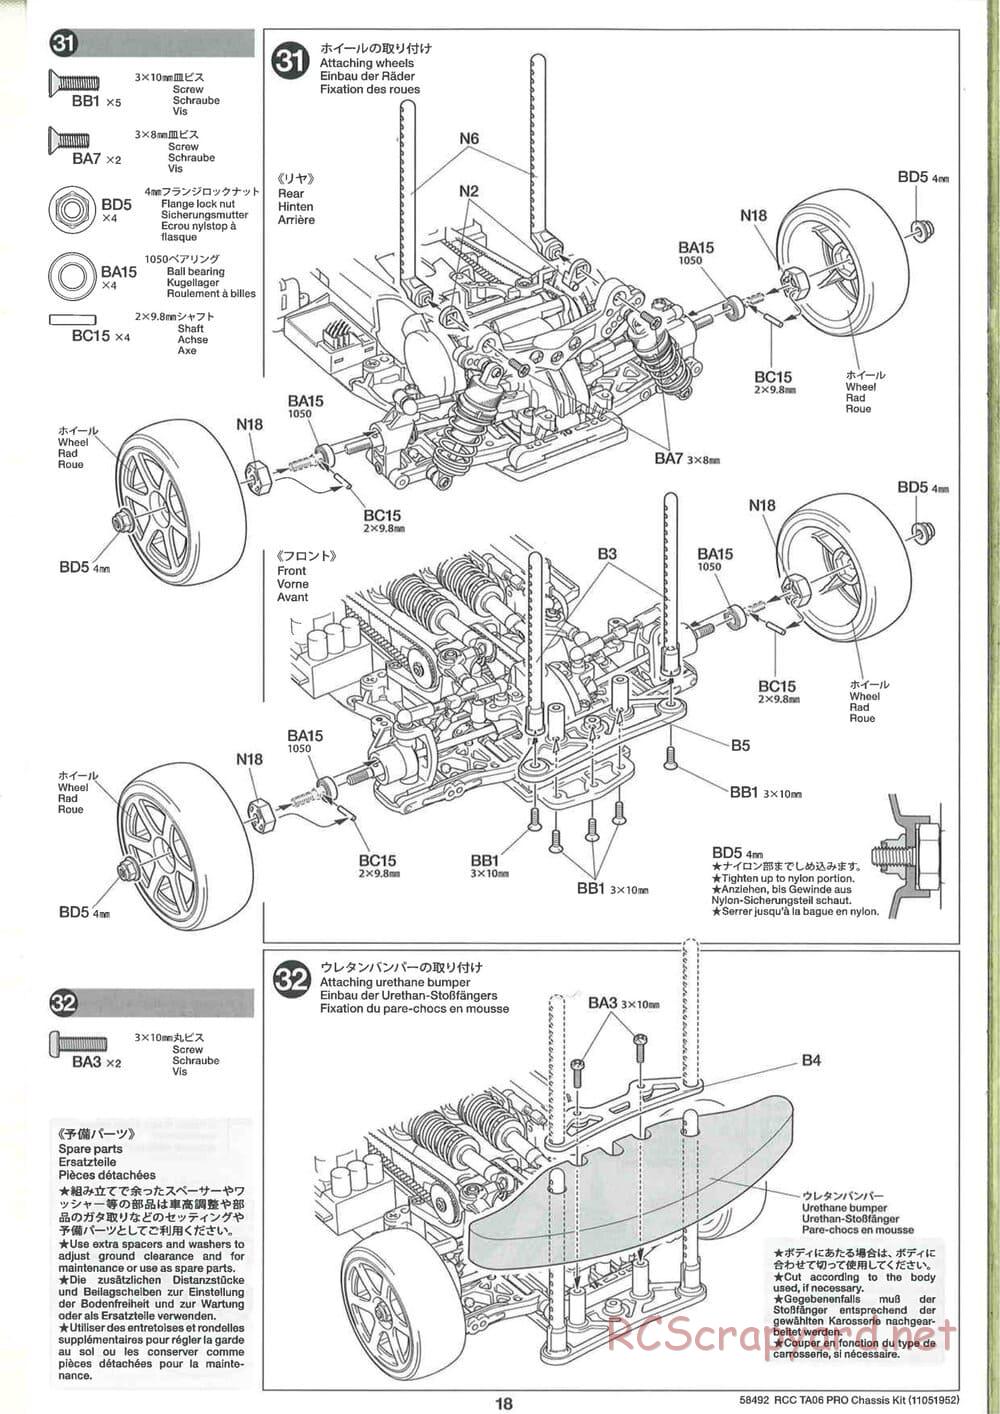 Tamiya - TA06 Pro Chassis - Manual - Page 18